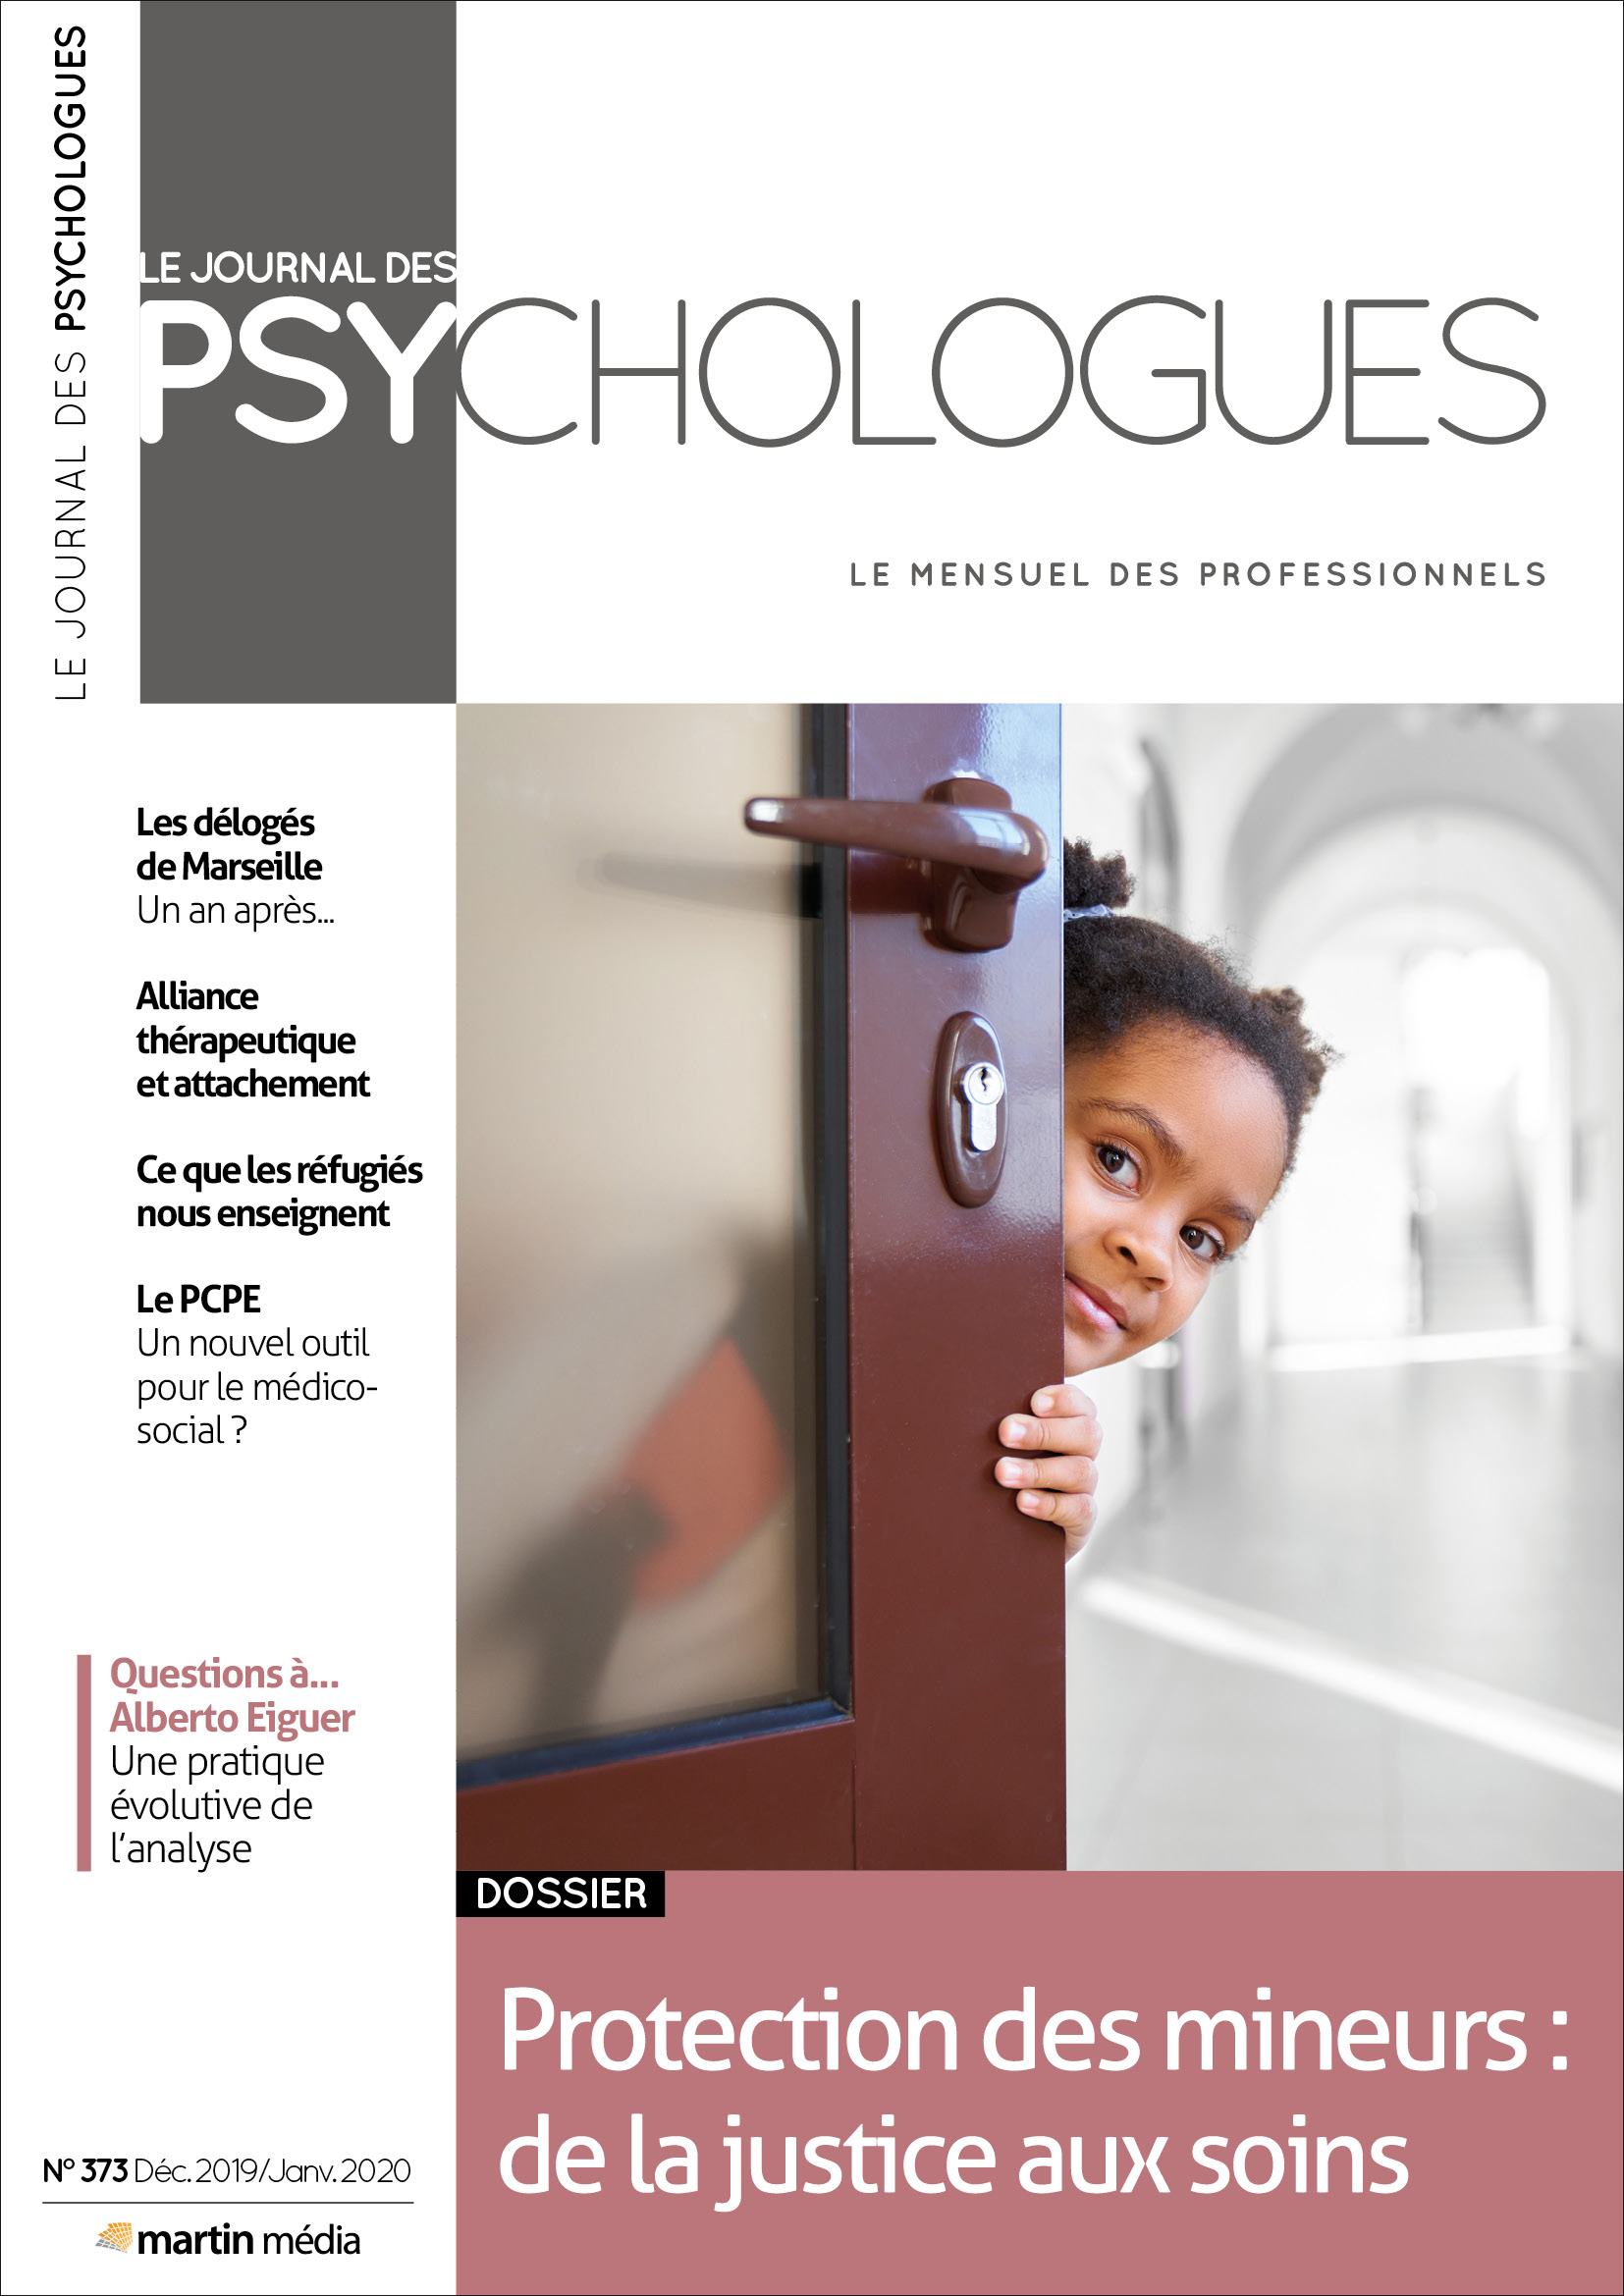 Le Journal des psychologues n°373